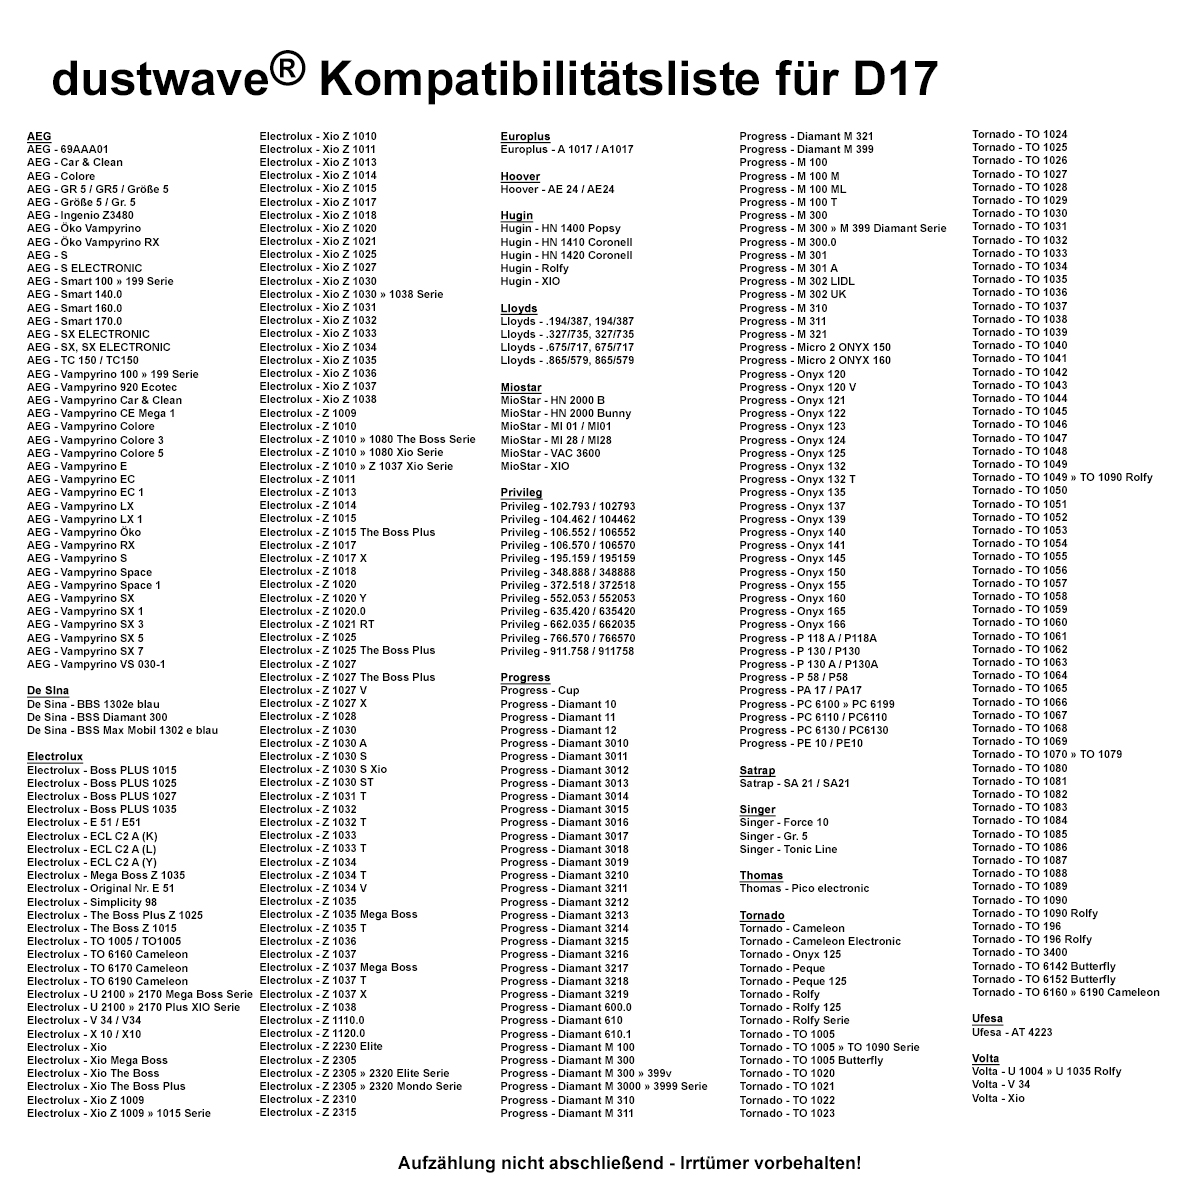 Dustwave® 20 Staubsaugerbeutel für AEG Vampyrino 160.0 - hocheffizient mit Hygieneverschluss - Made in Germany